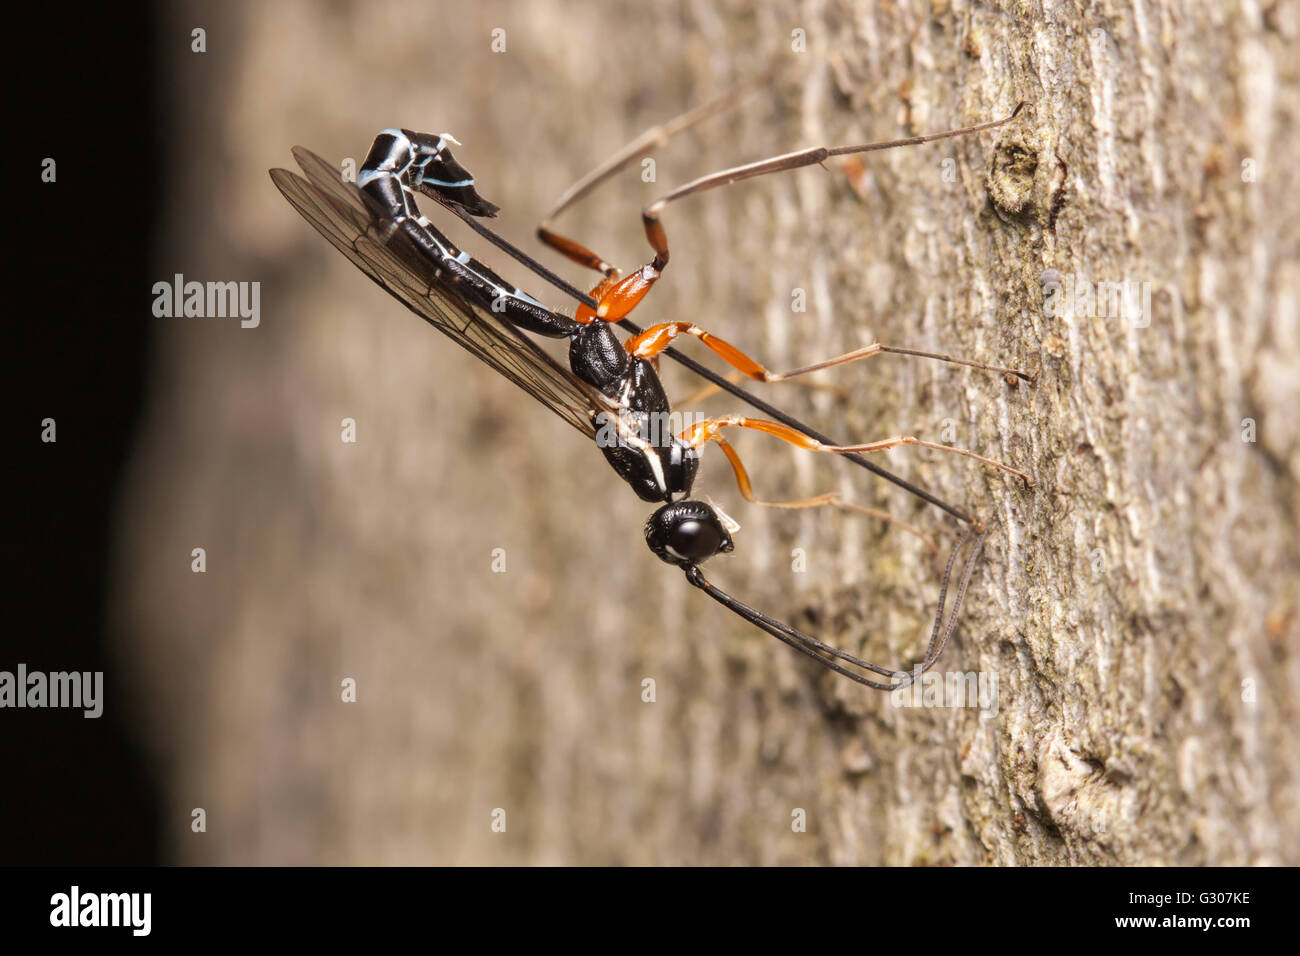 Une femelle de guêpe ichneumonide (Podoschistus vittifrons) oviposits (pond des oeufs) dans les larves de guêpes de bois dans le tronc d'un arbre mort. Banque D'Images